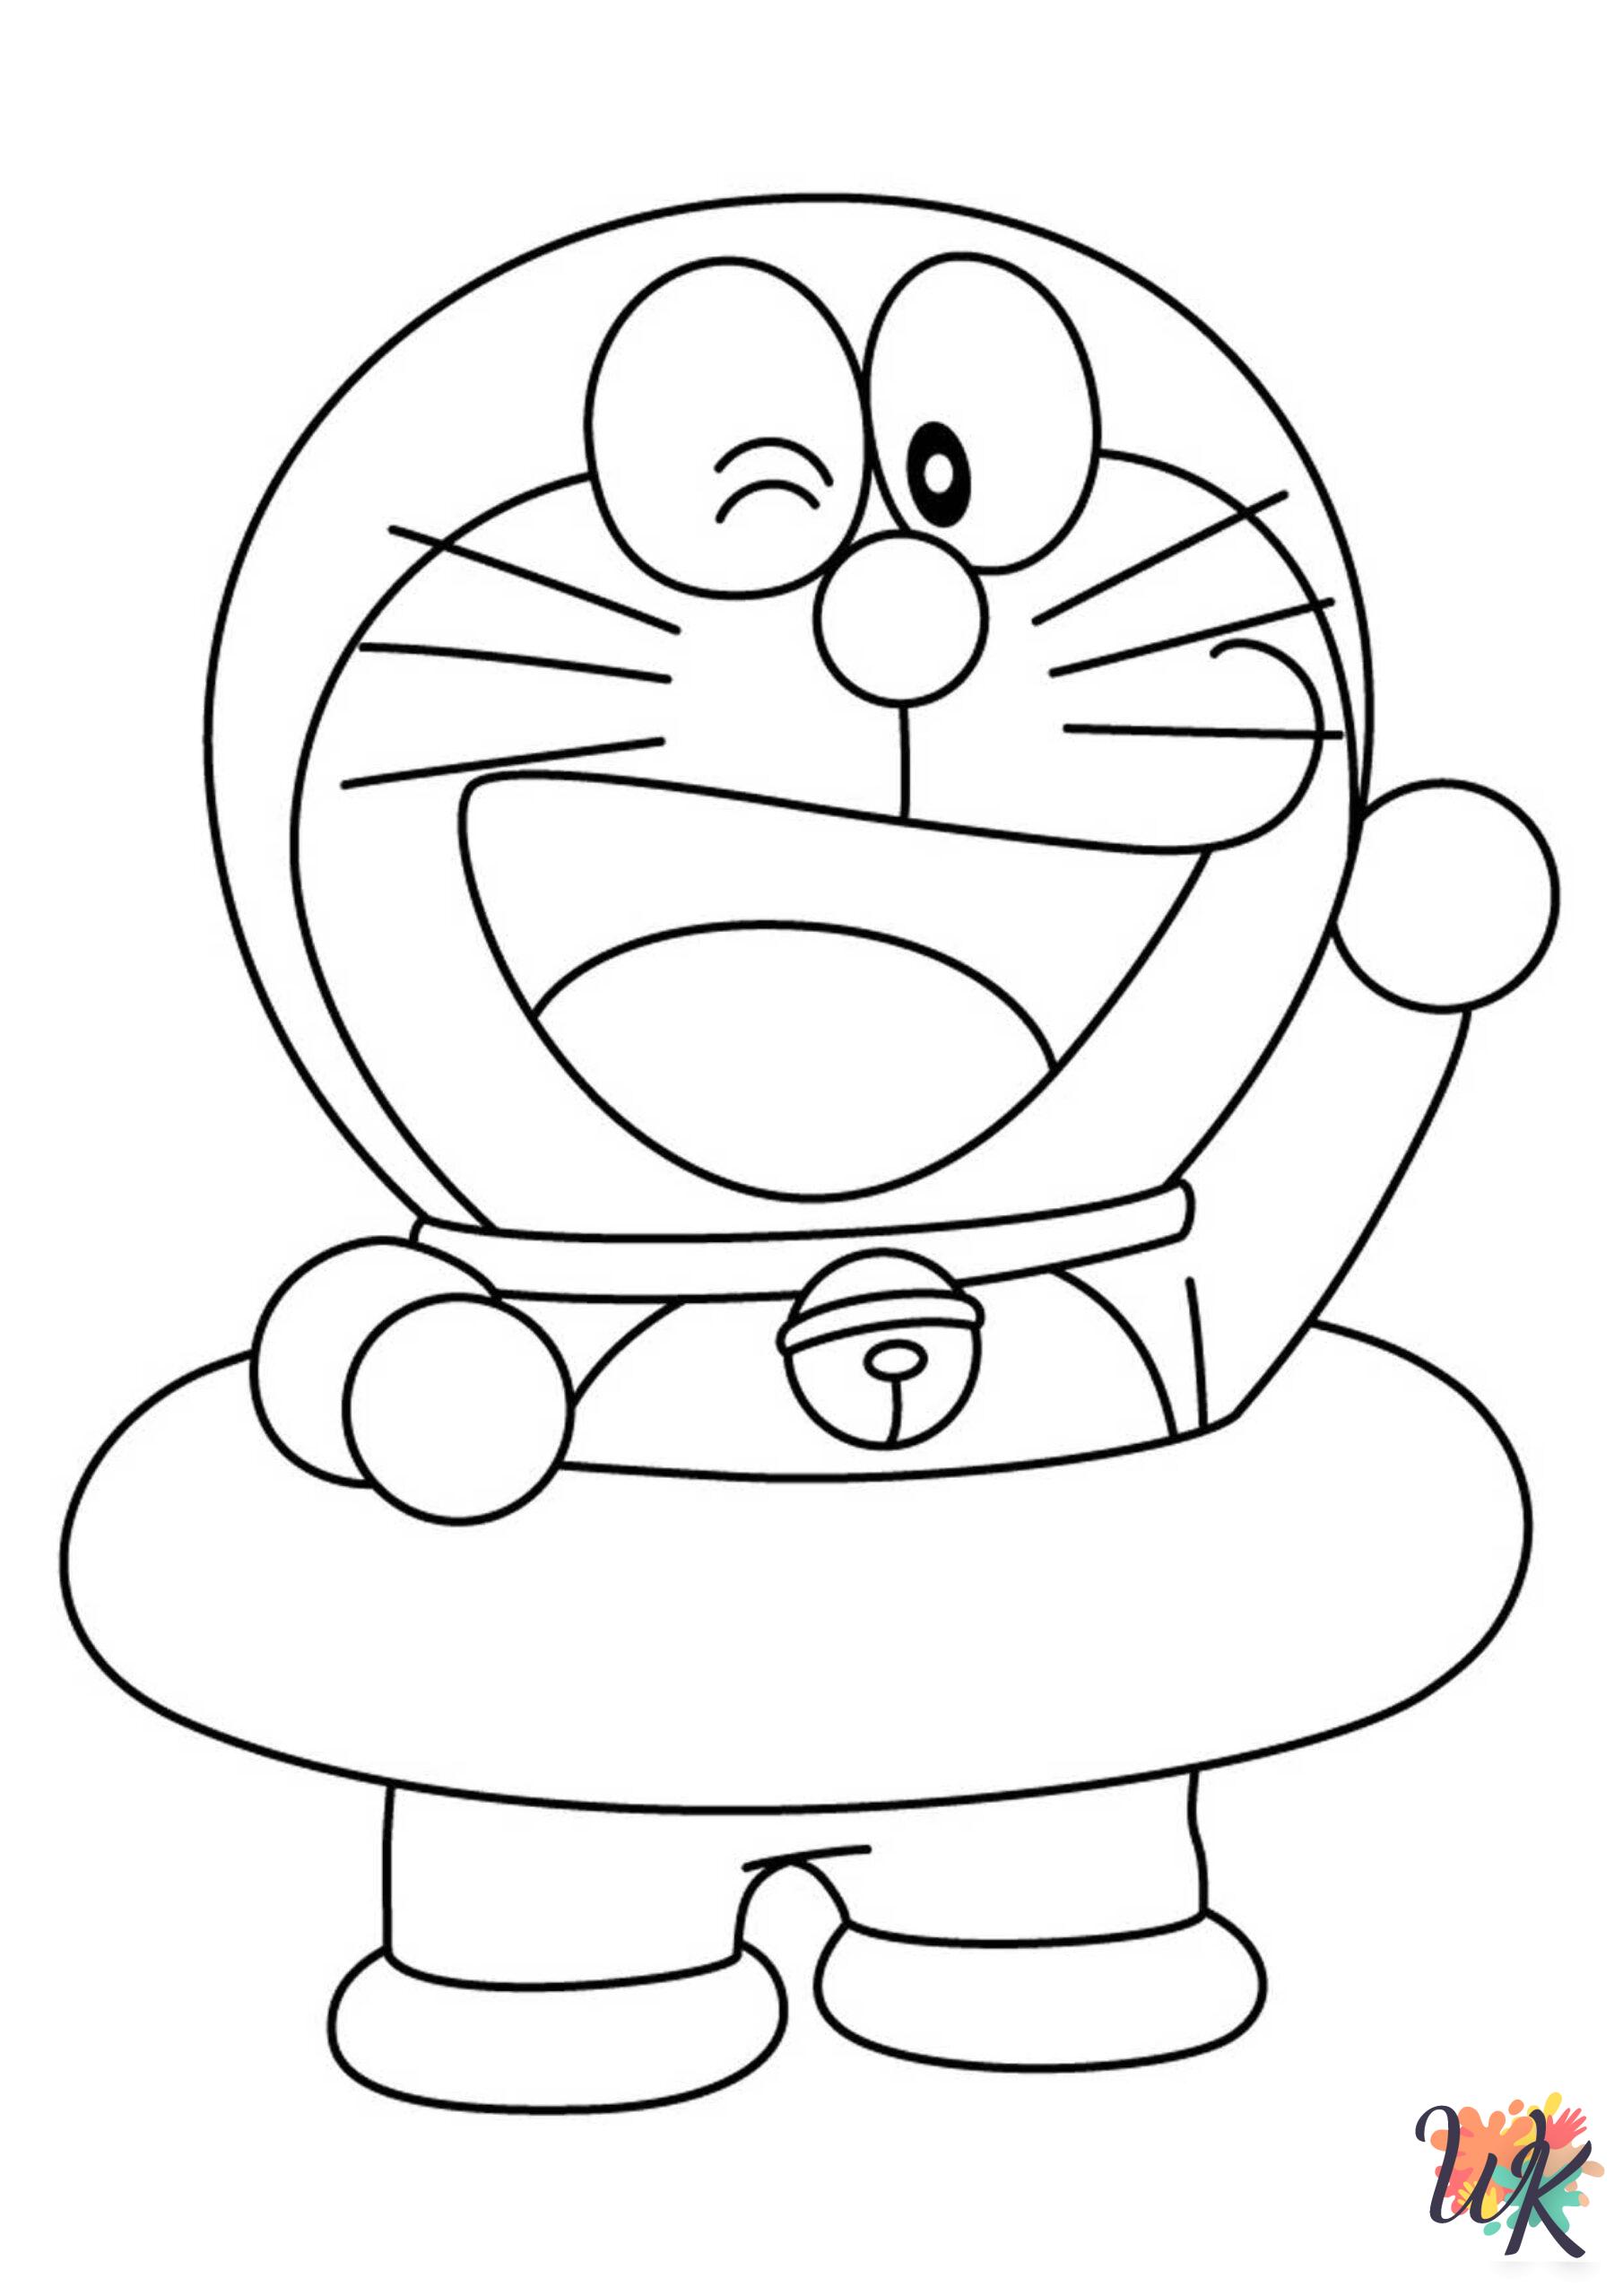 Doraemon coloring pages pdf 1